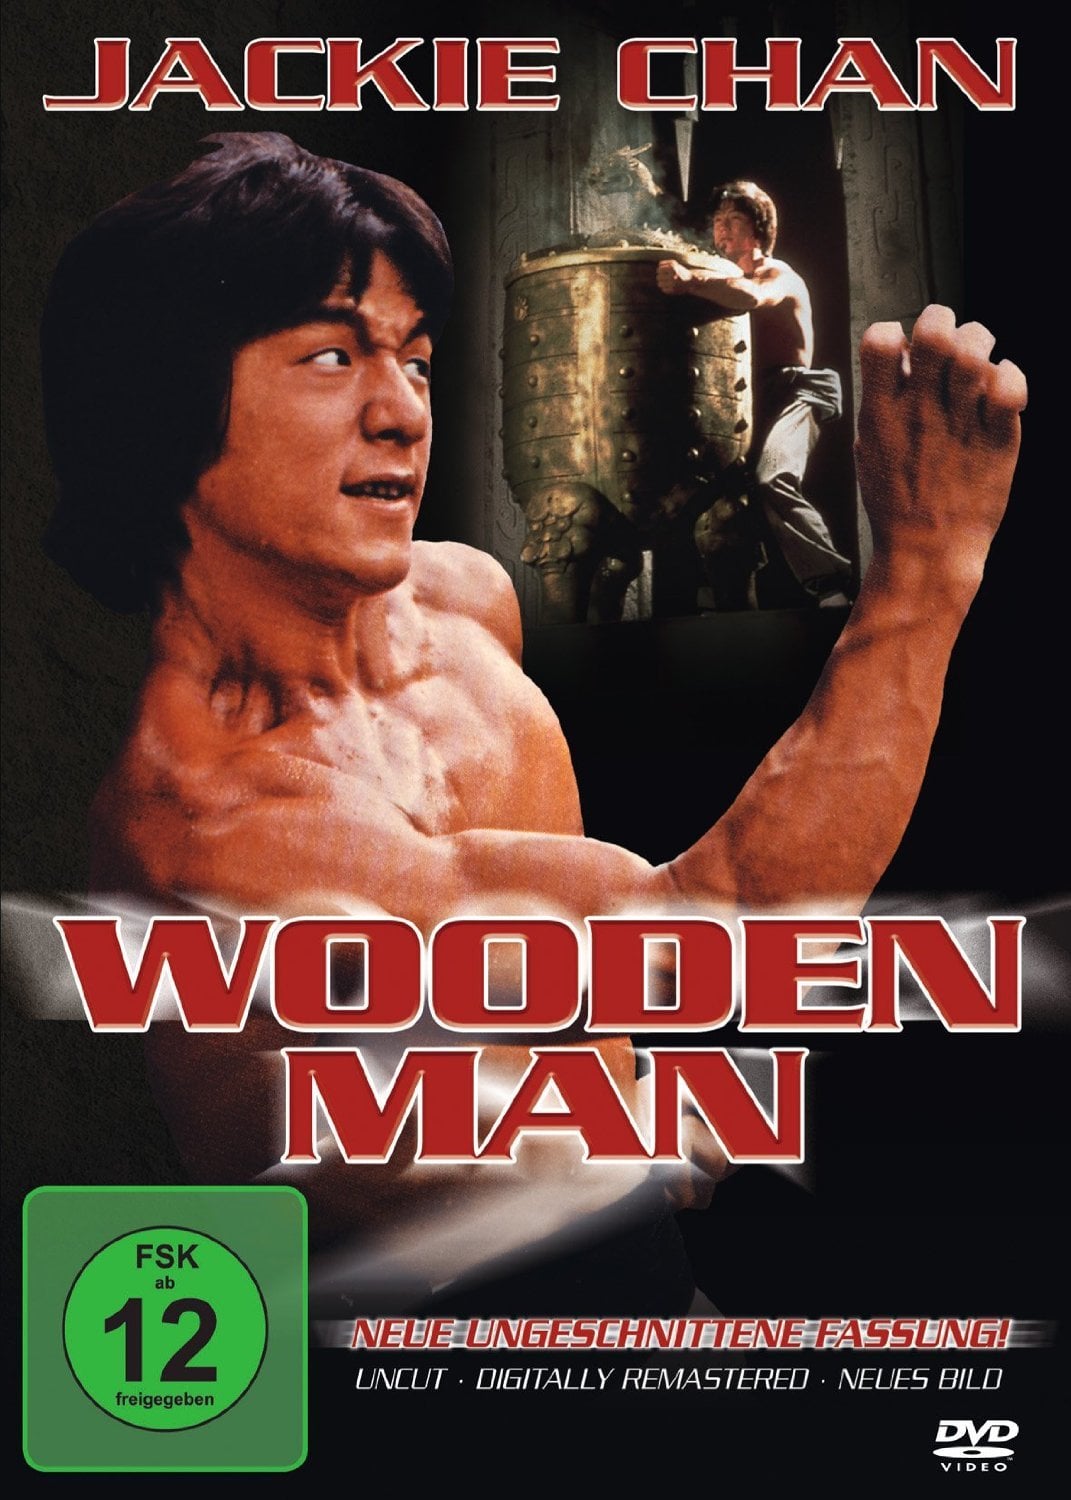 Plakat von "Wooden Man"